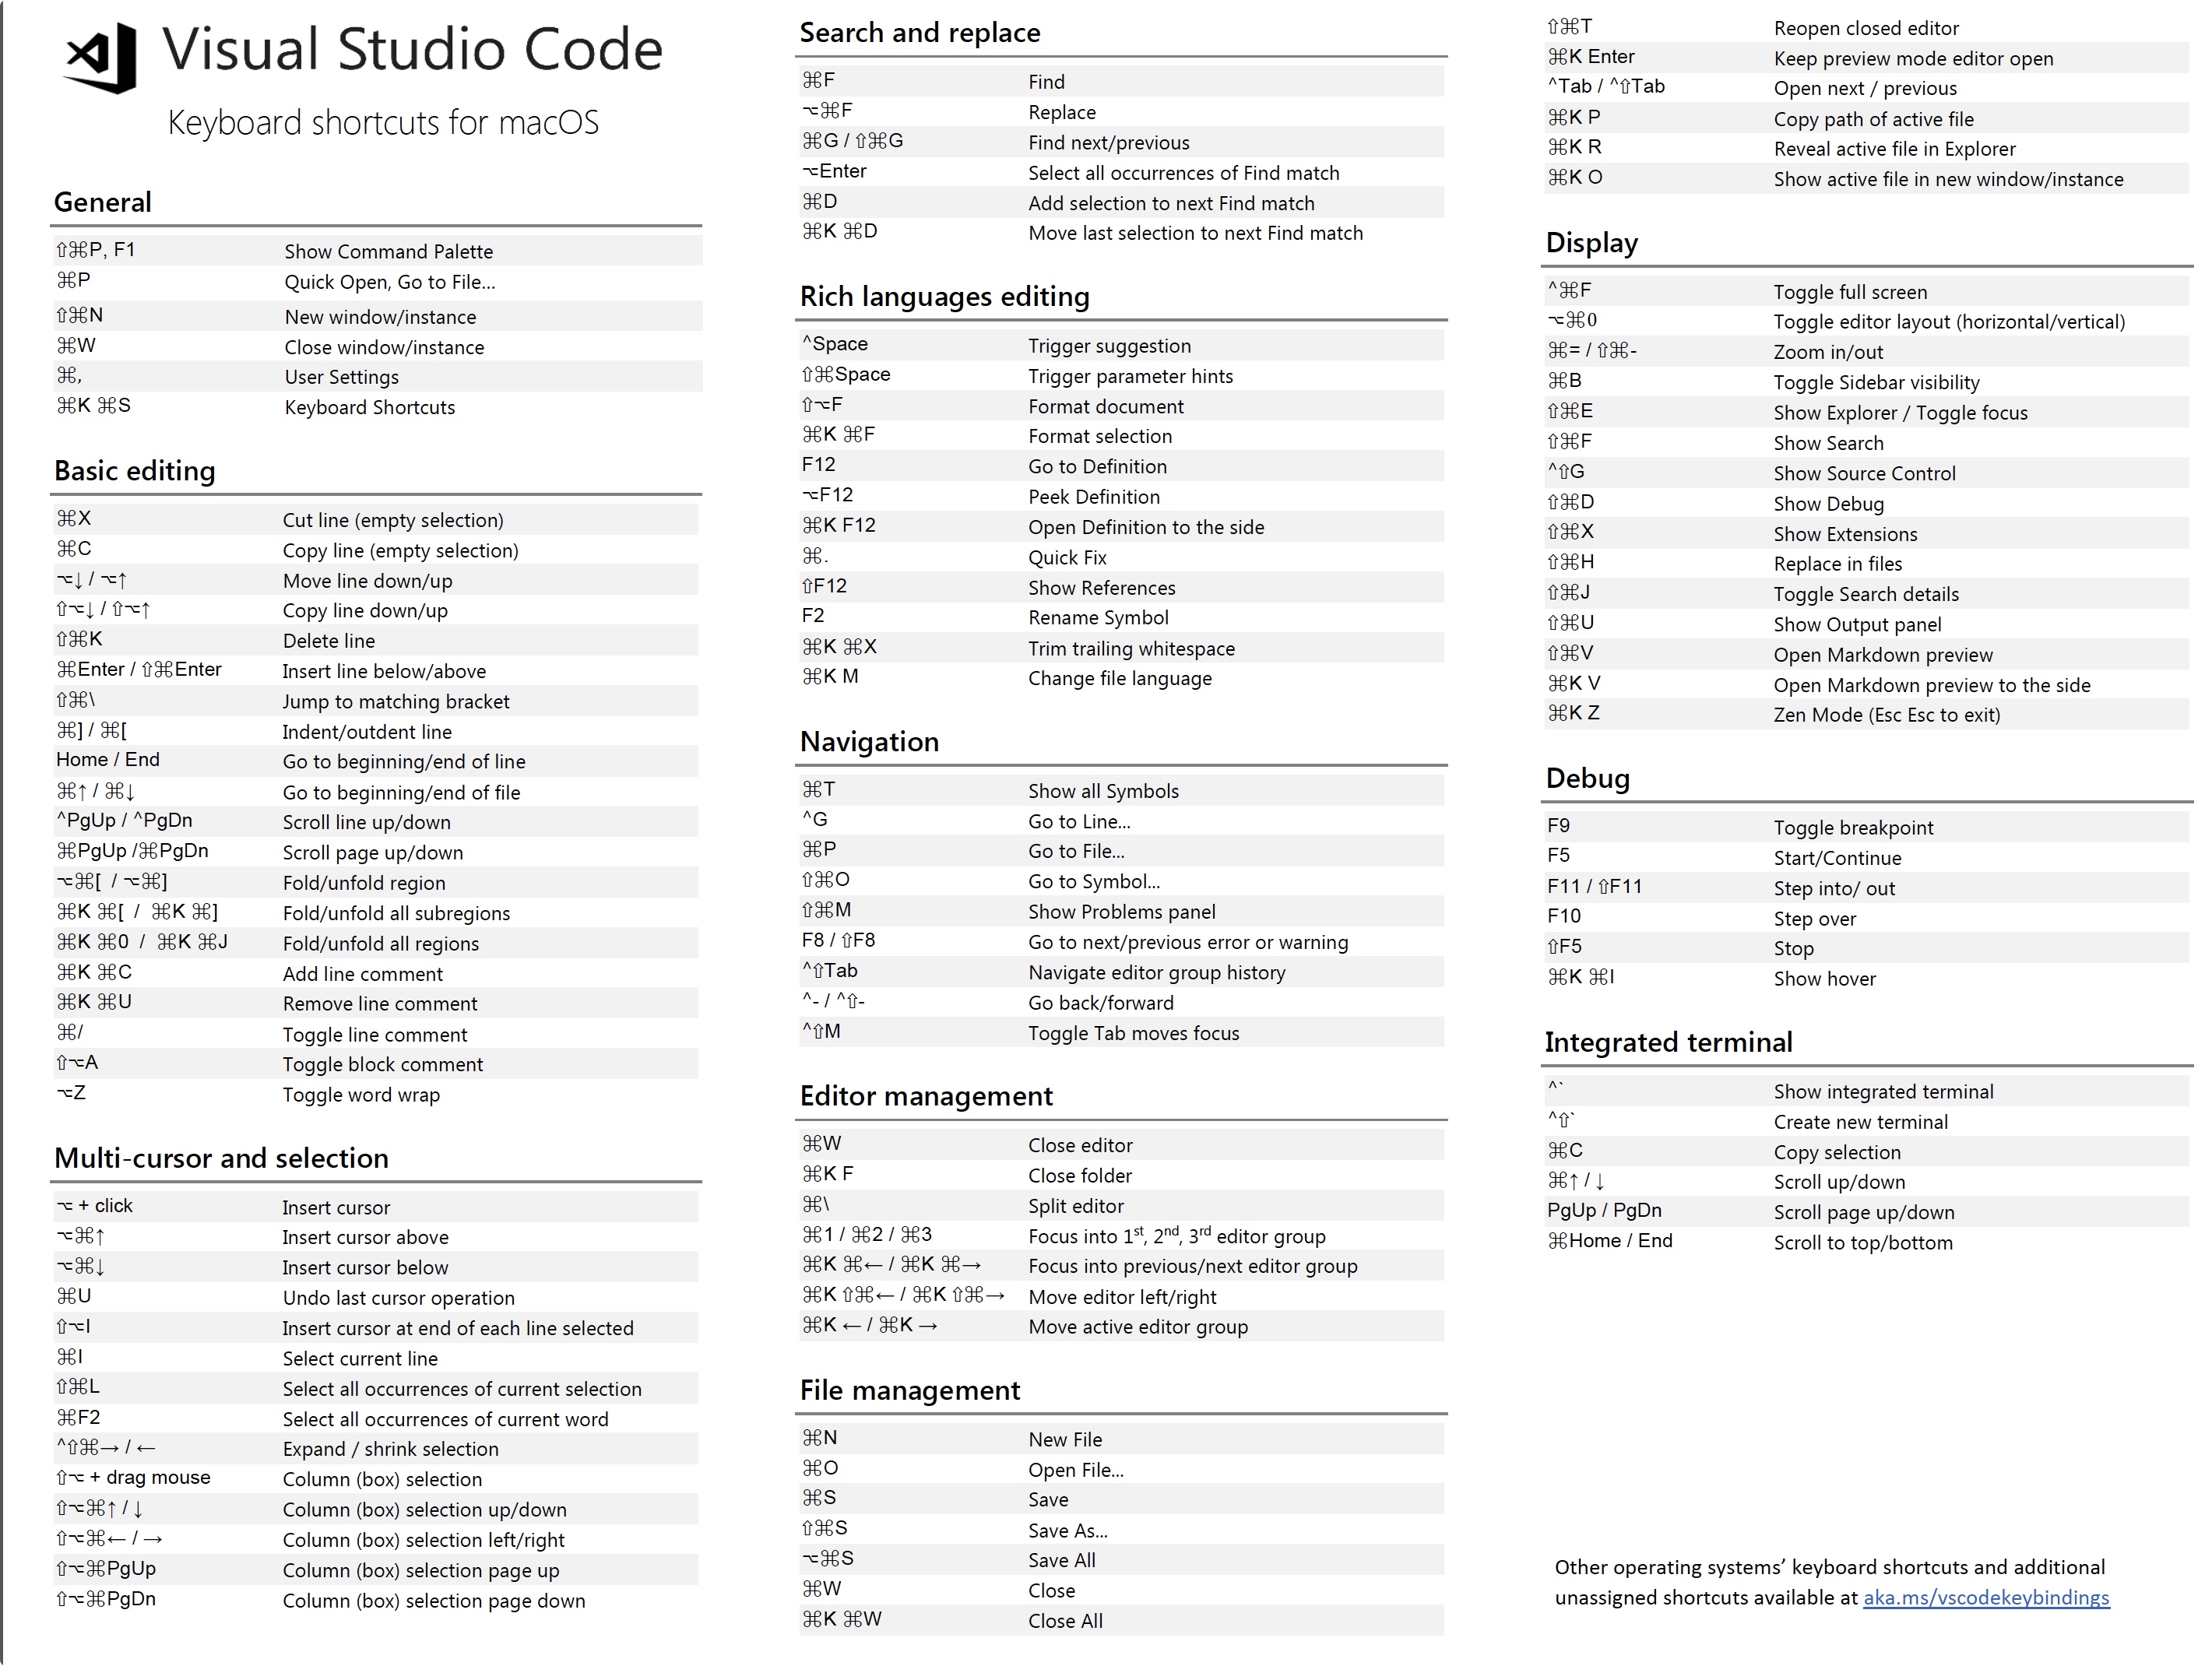 mac command key shortcuts table